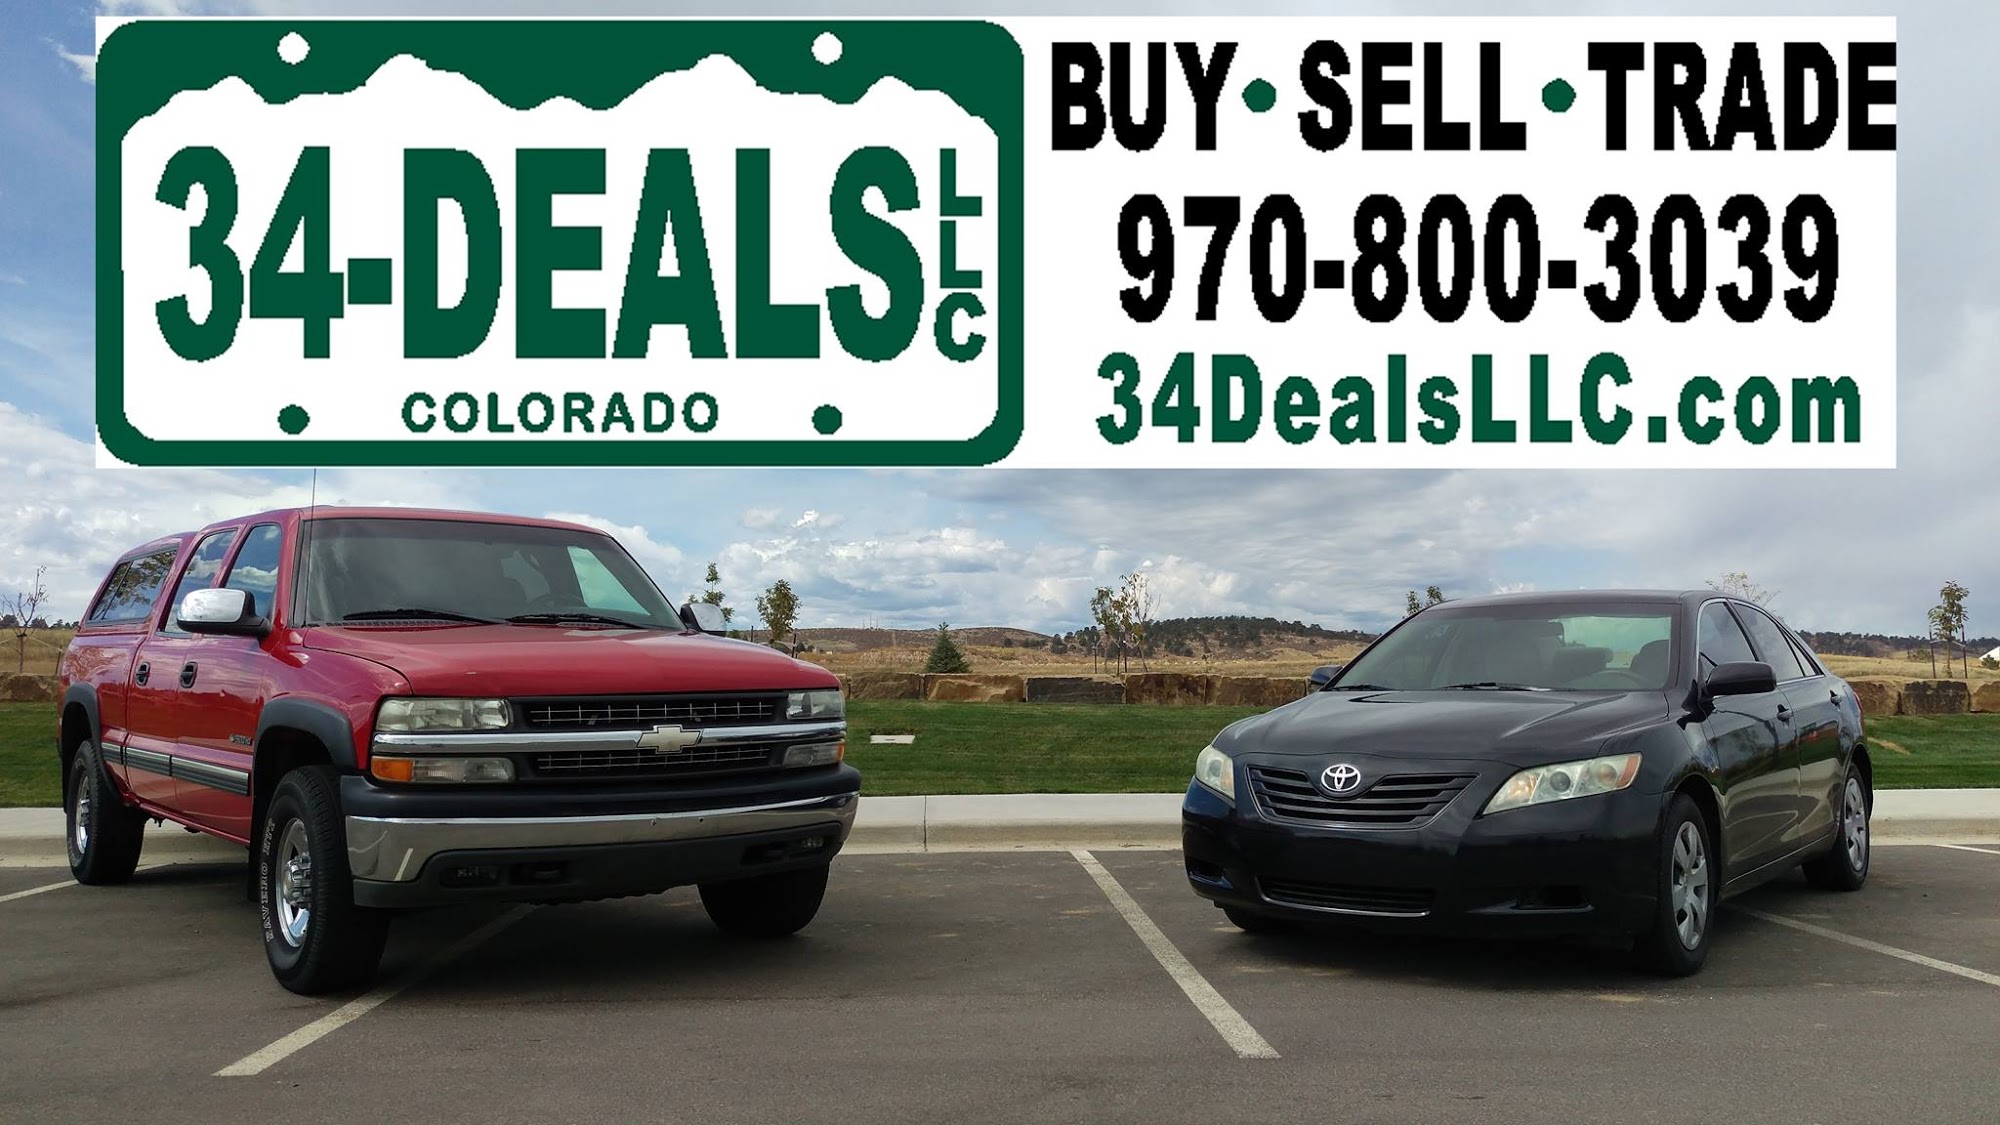 34 Deals LLC